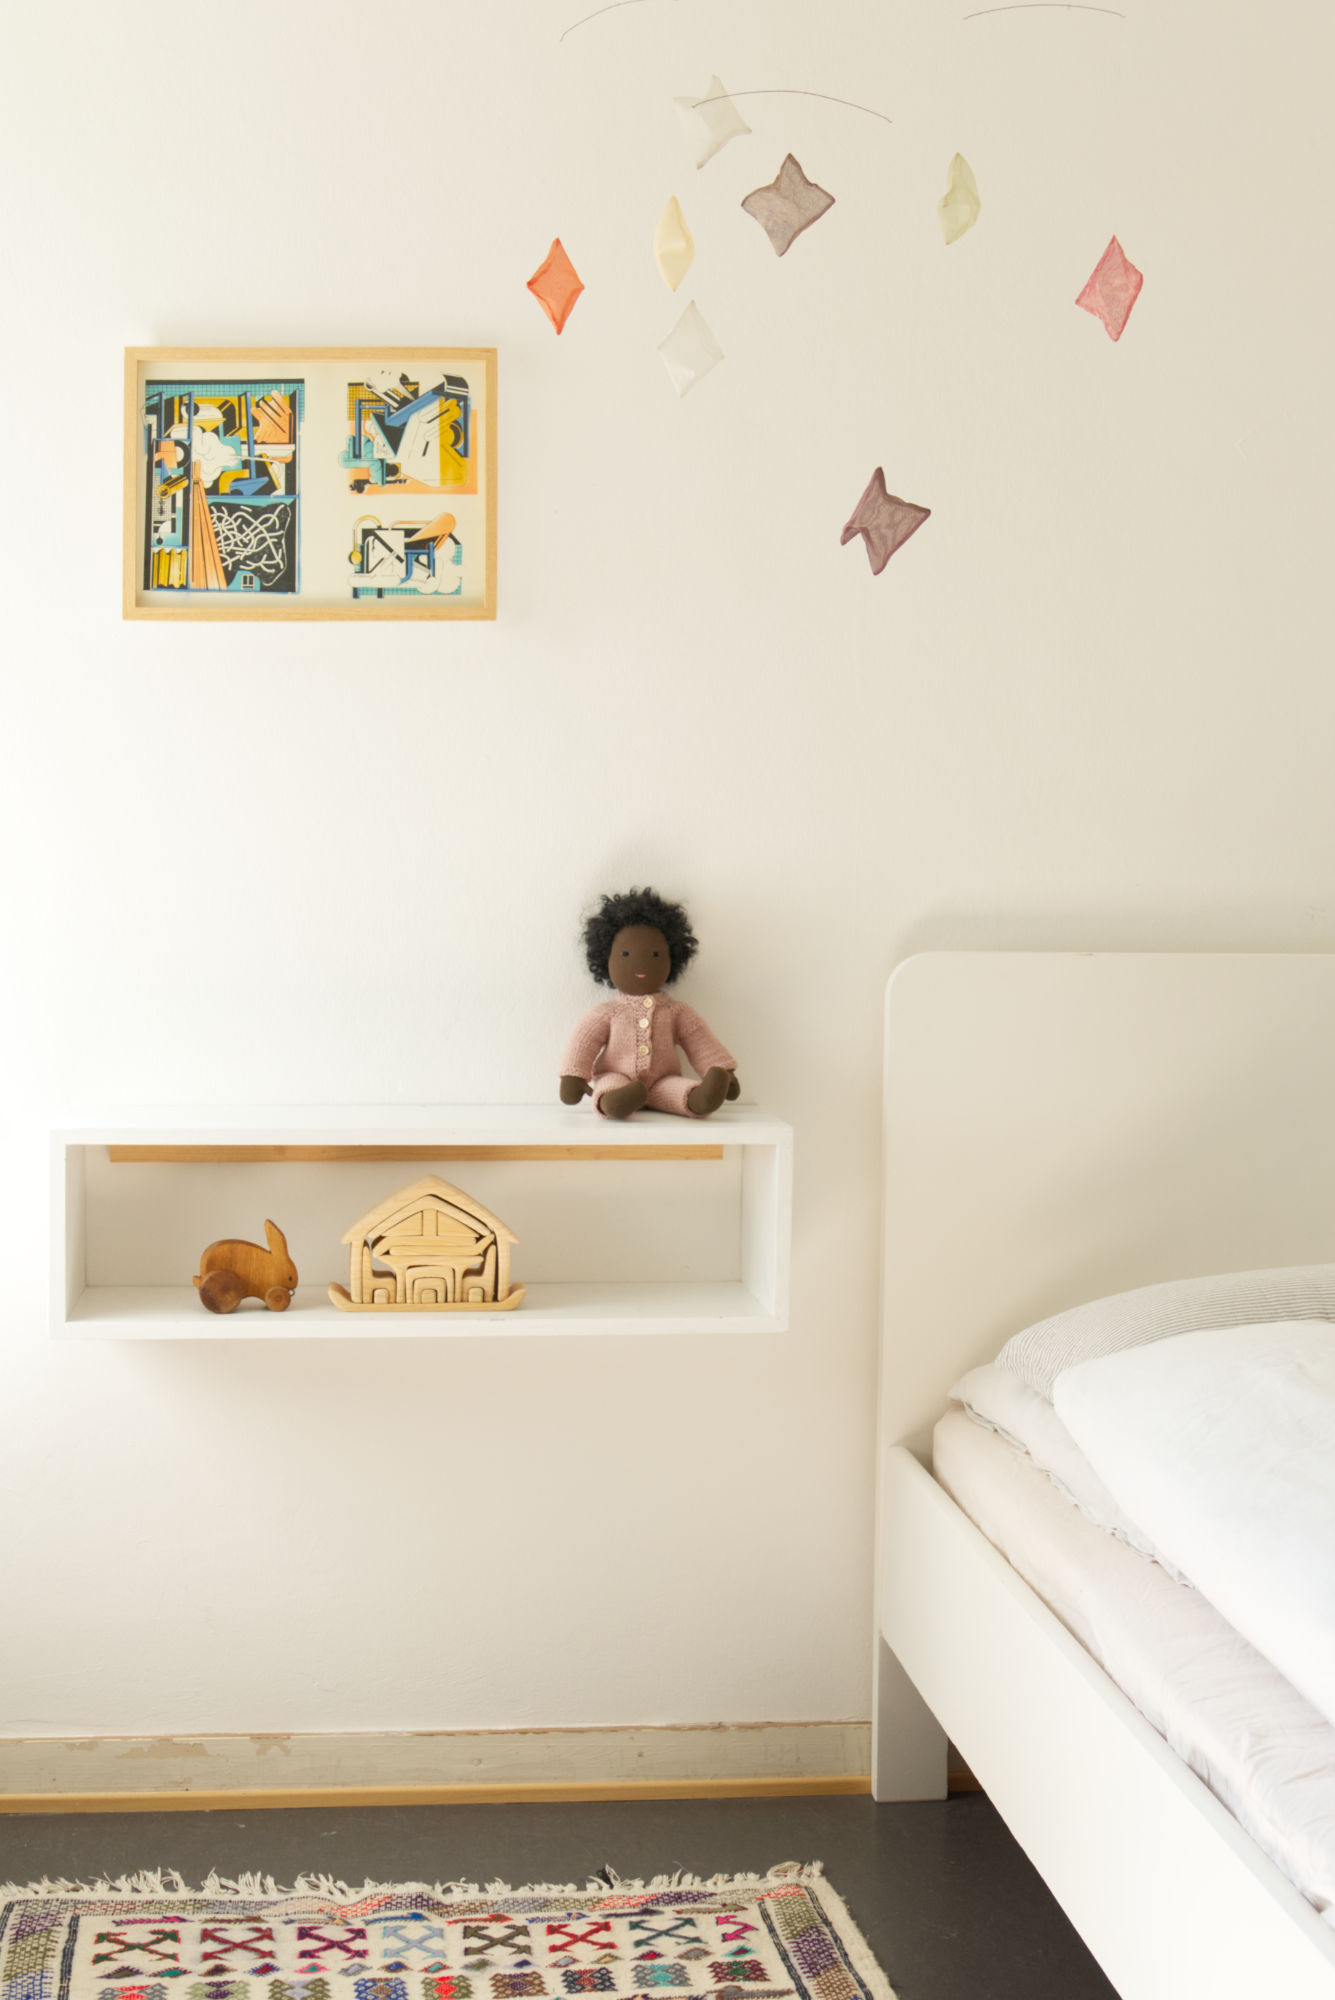 Einblick in ein Kinderzimmer. Zu sehen sind verschiedene Spielsachen, wie eine sitzende Puppe, ein Holzhase und ein Holz-Bauset.